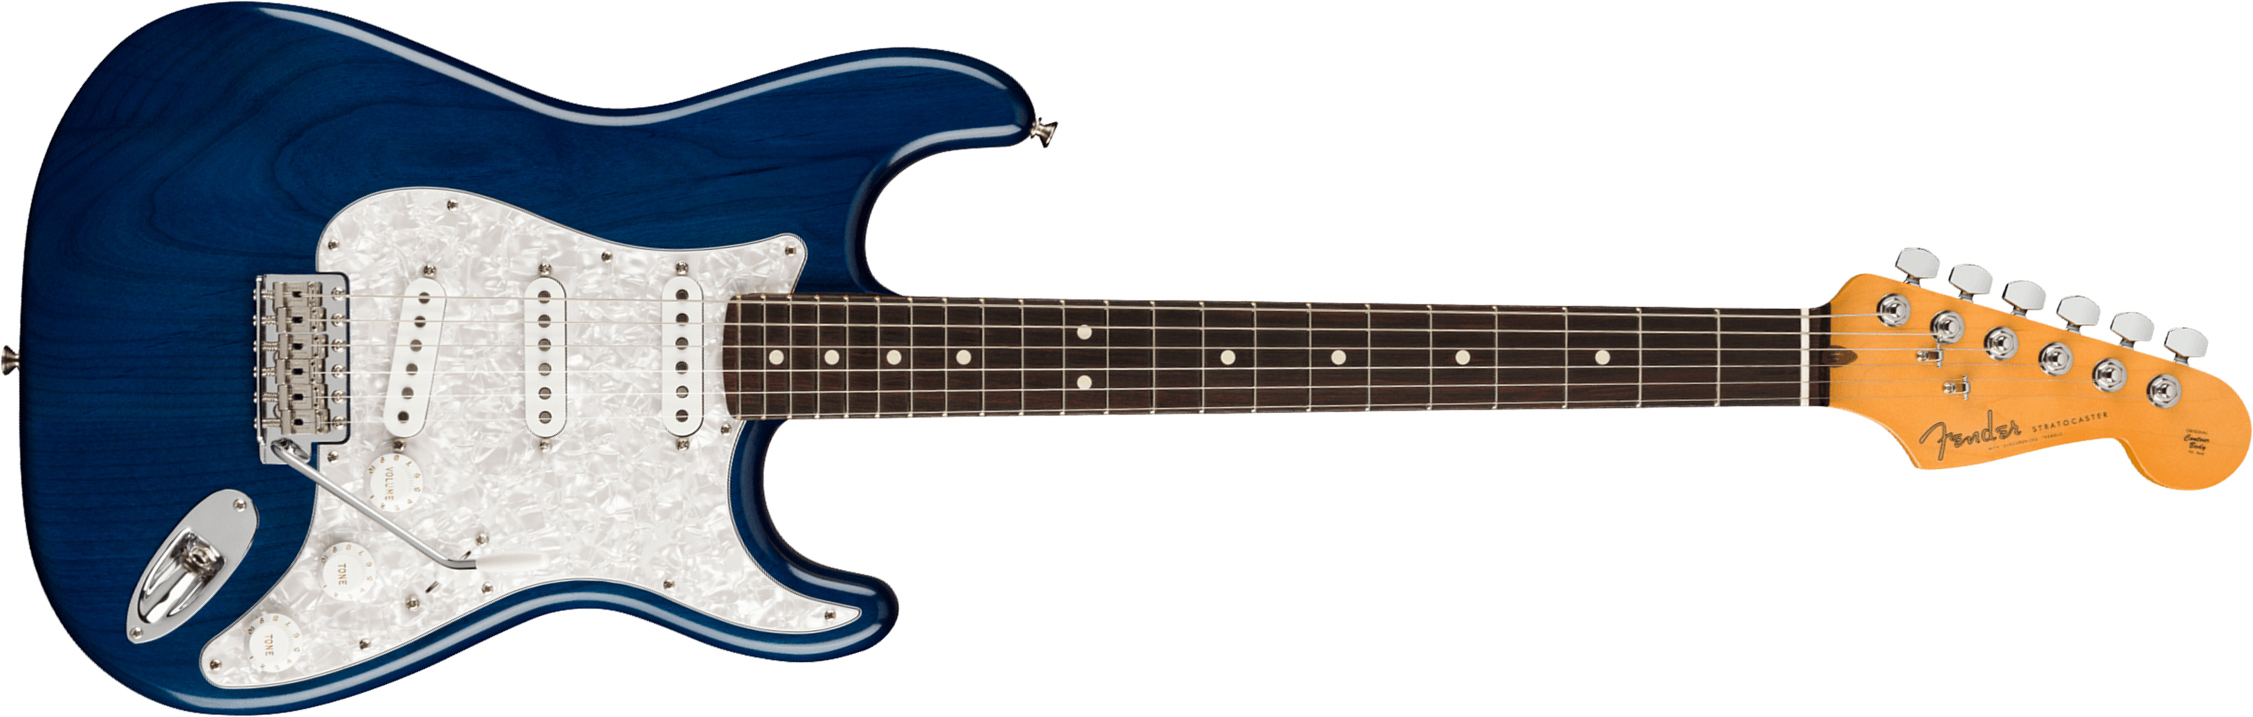 Fender Cory Wong Strat Signature Usa 3s Trem Rw - Sapphire Blue Transparent - Guitare Électrique Forme Str - Main picture